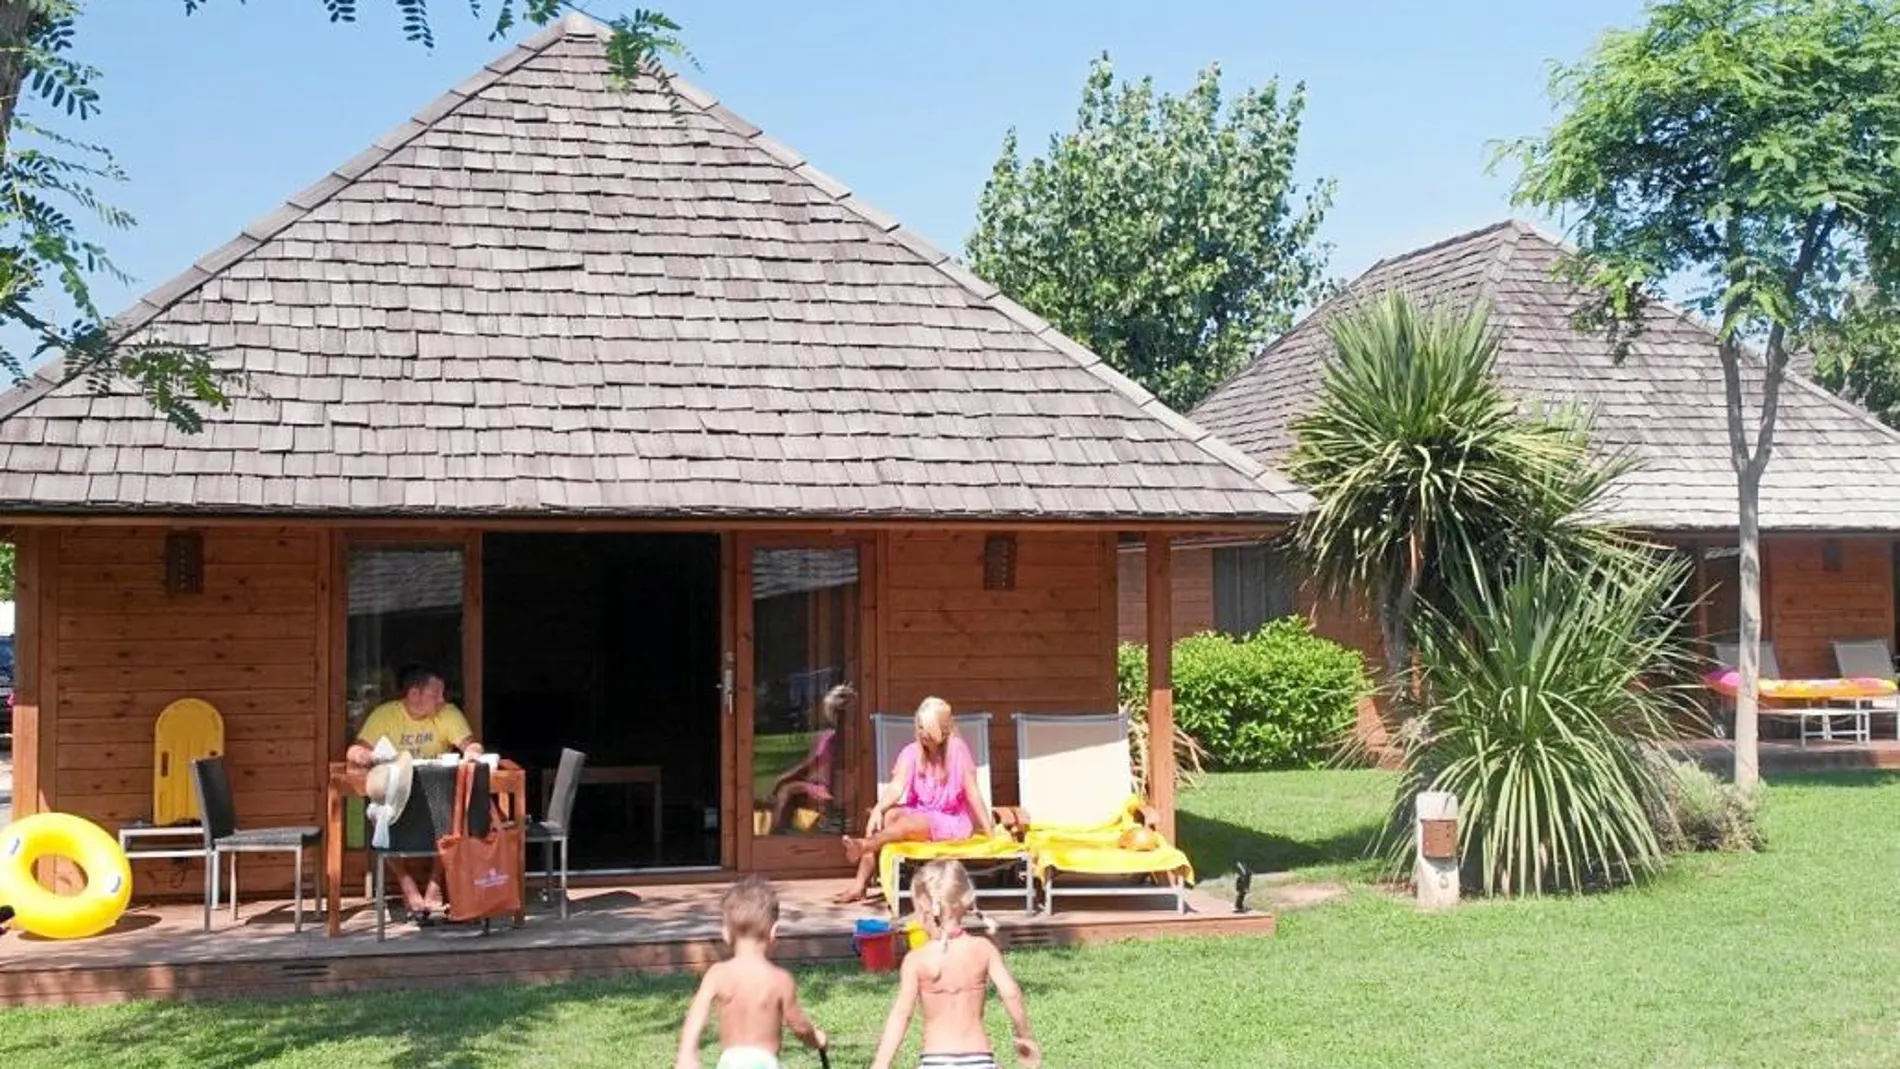 El alojamiento cuenta con cuatro tipos de villas con bungalows de madera